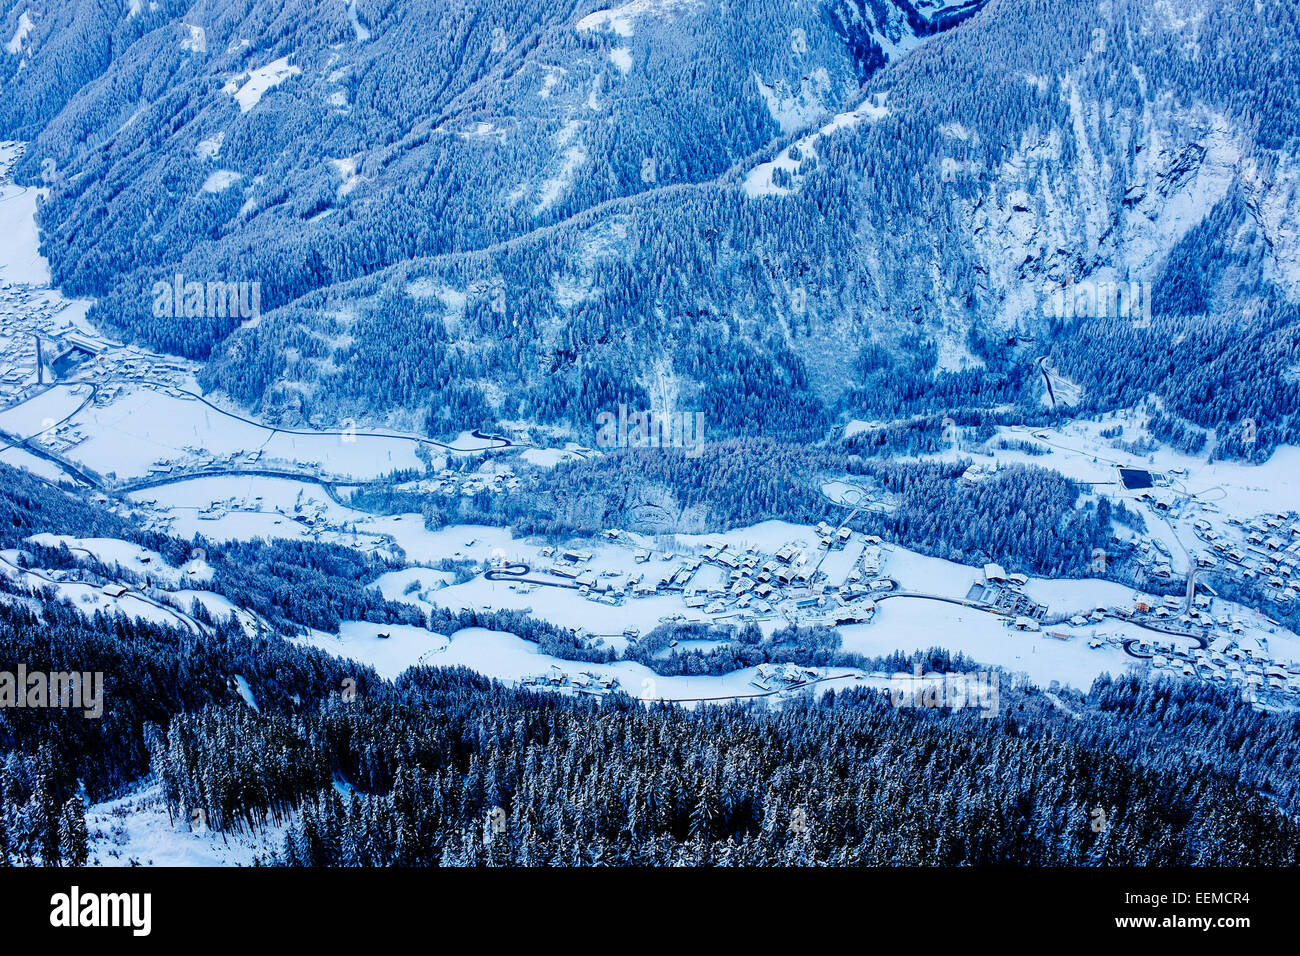 Zillertal valley seen from air, Tirol, Austria Stock Photo